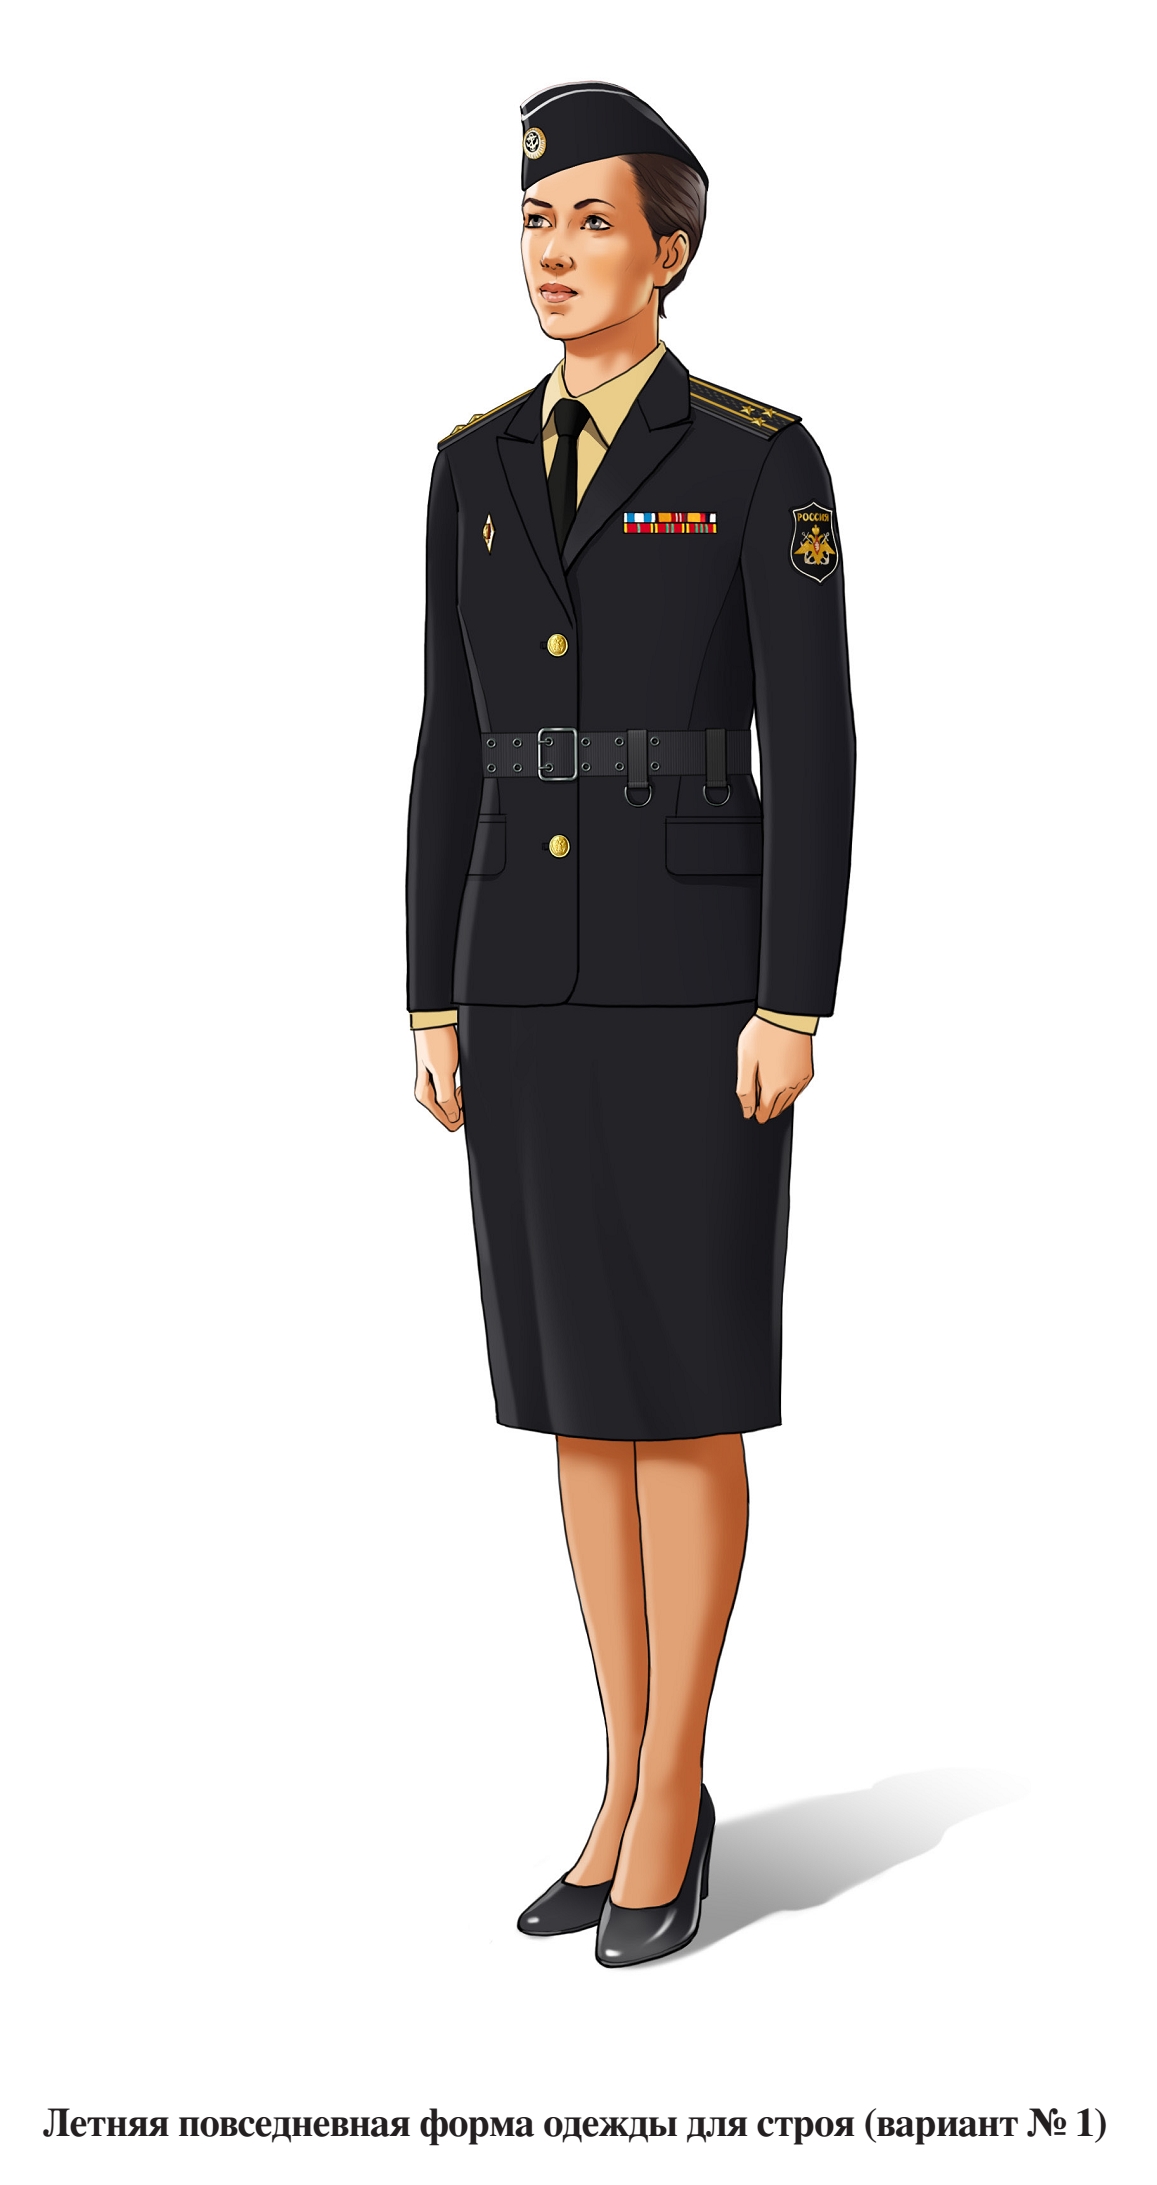 Летняя повседневная форма военнослужащих женского пола для строя, в юбке